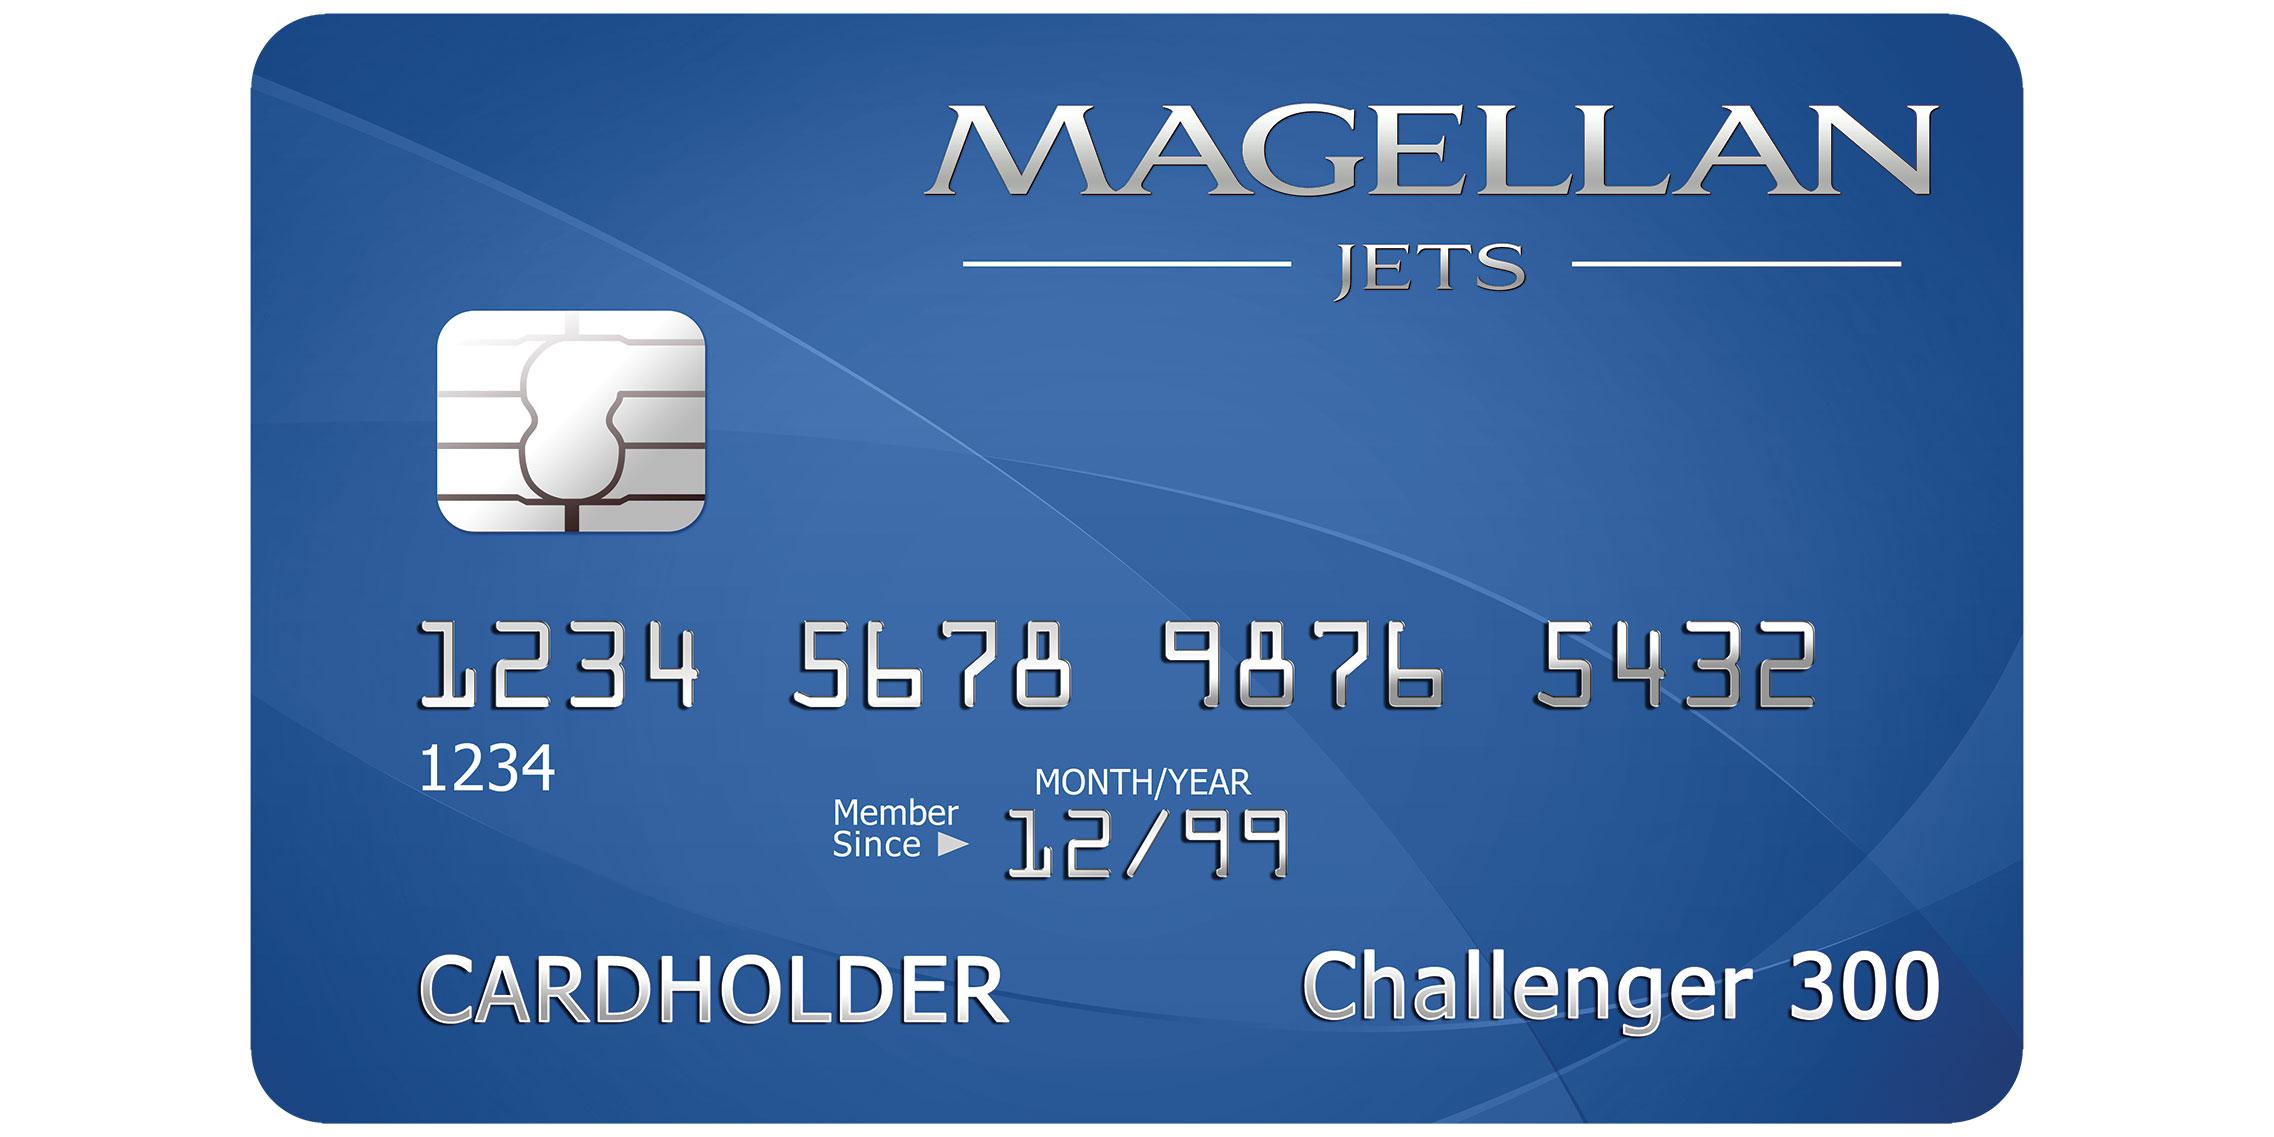 Magellan Jets card